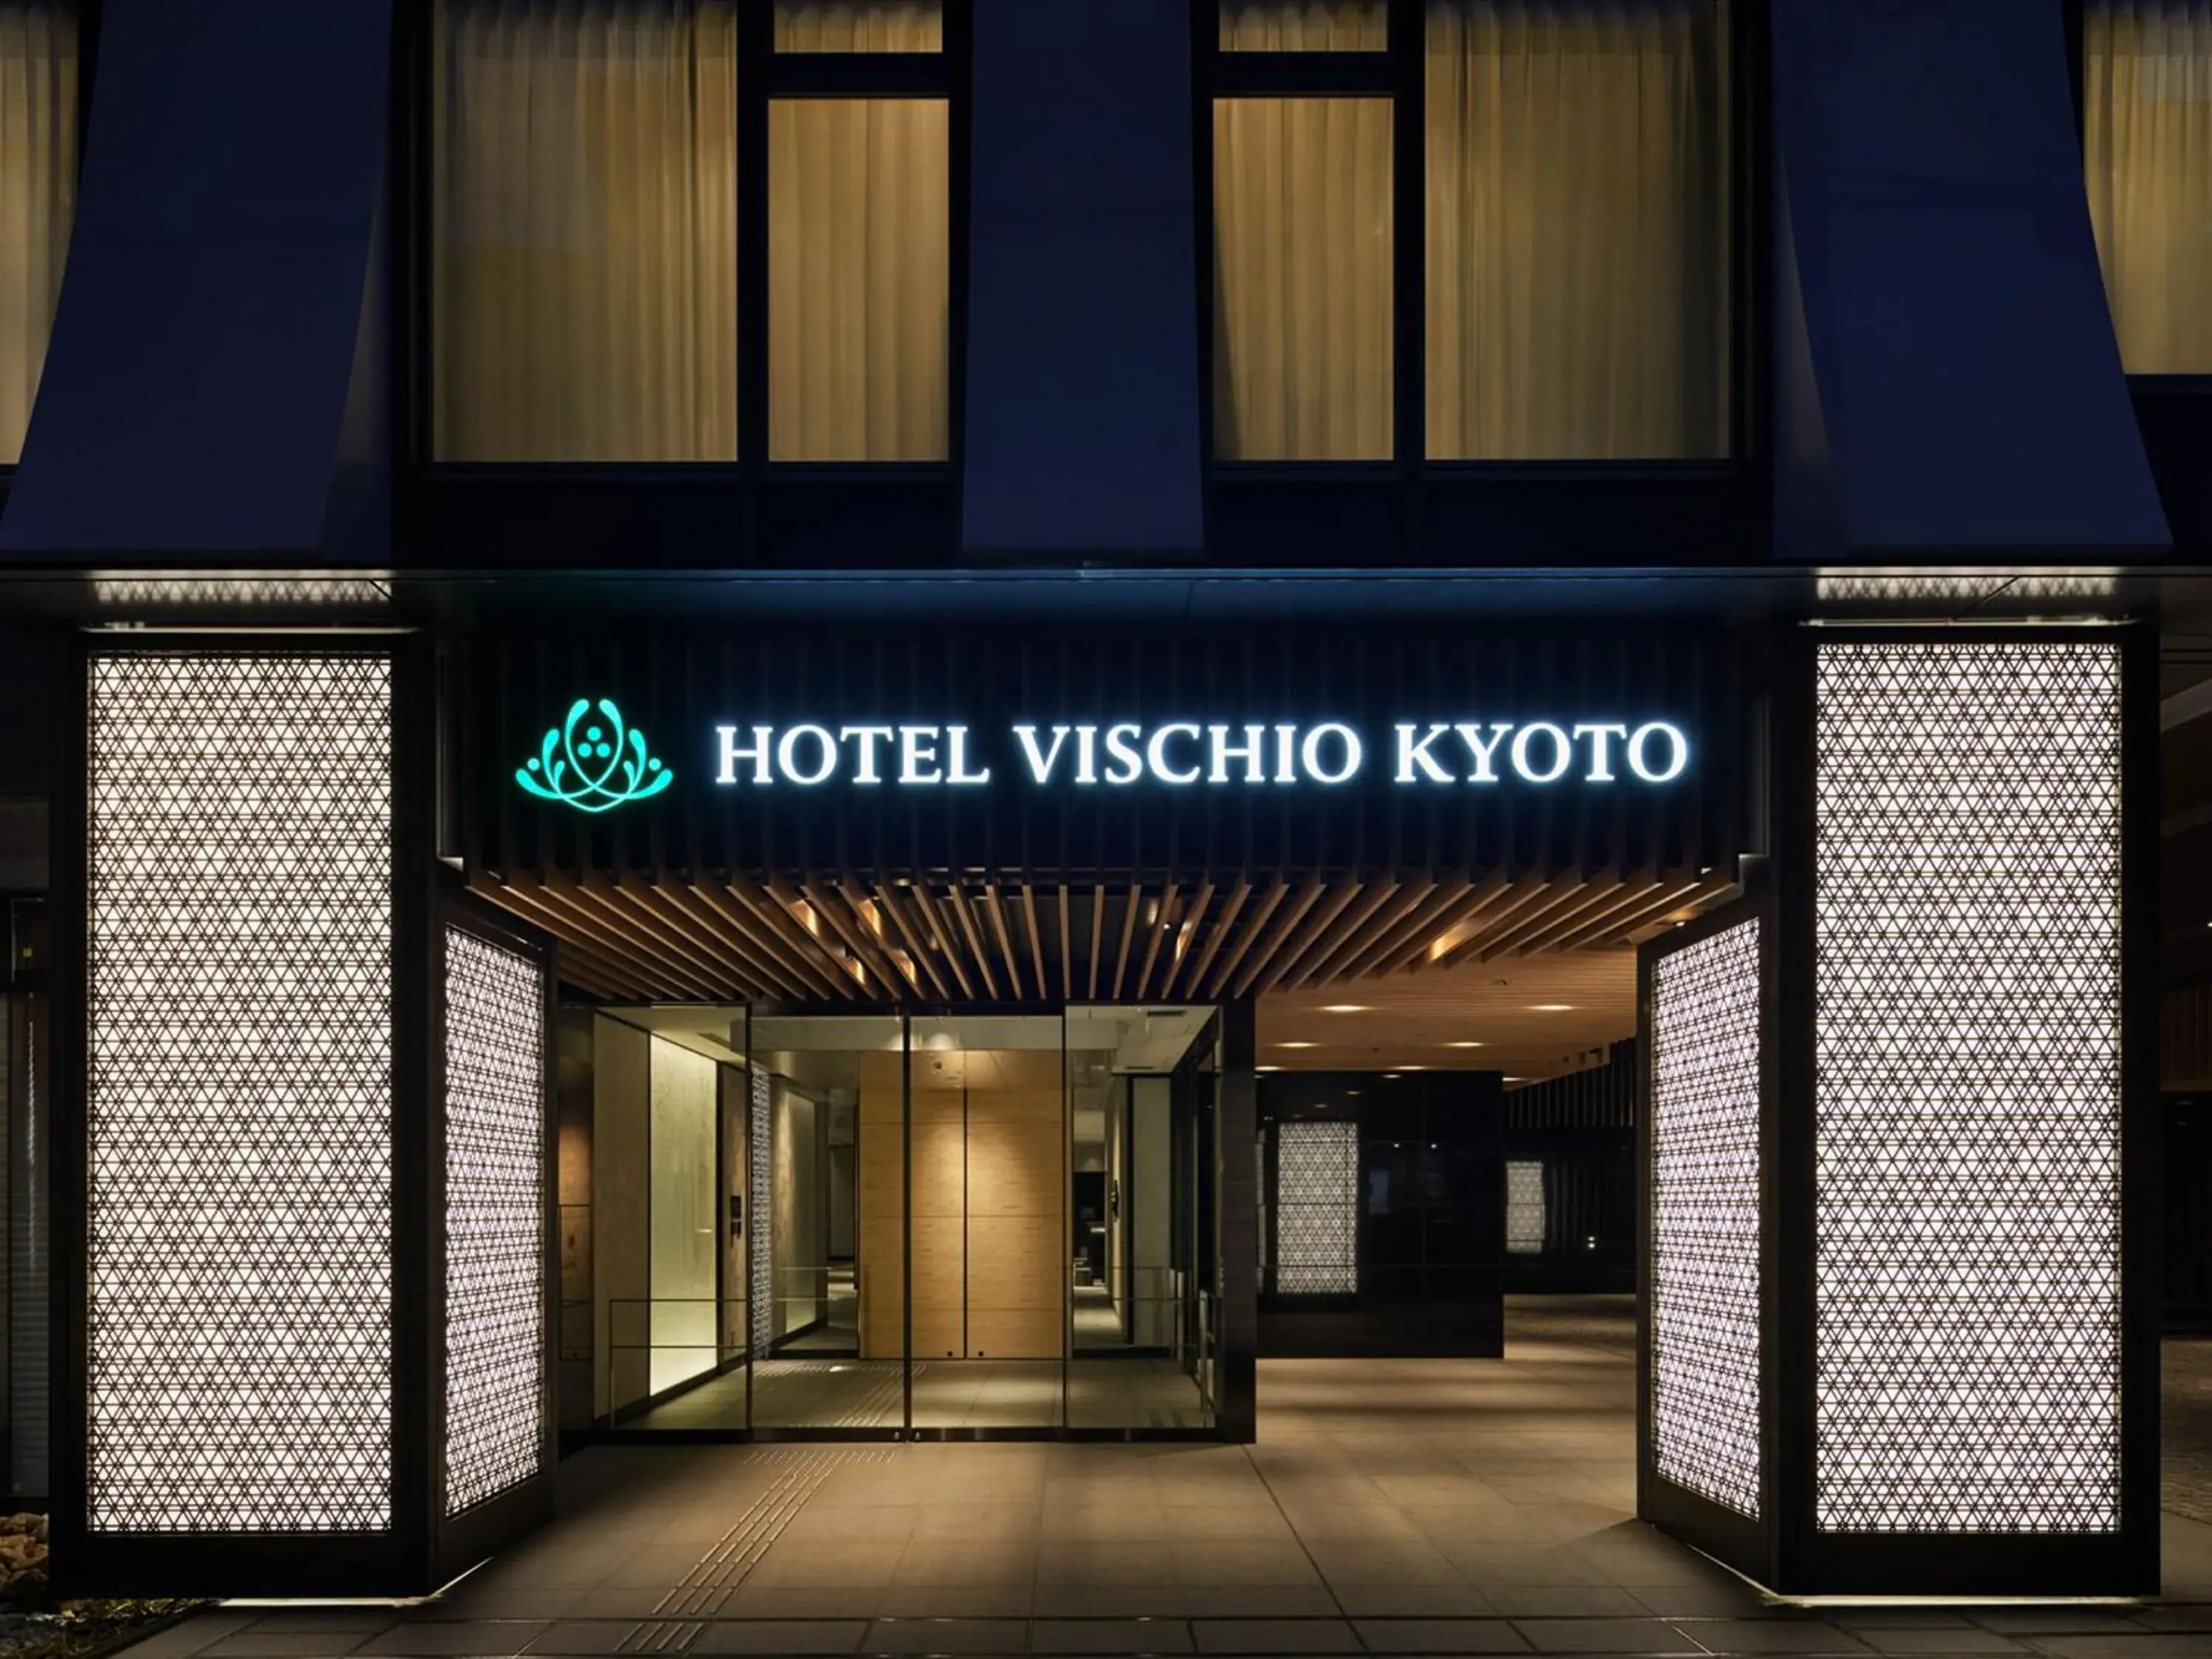 Facade/entrance in Hotel Vischio Kyoto by GRANVIA